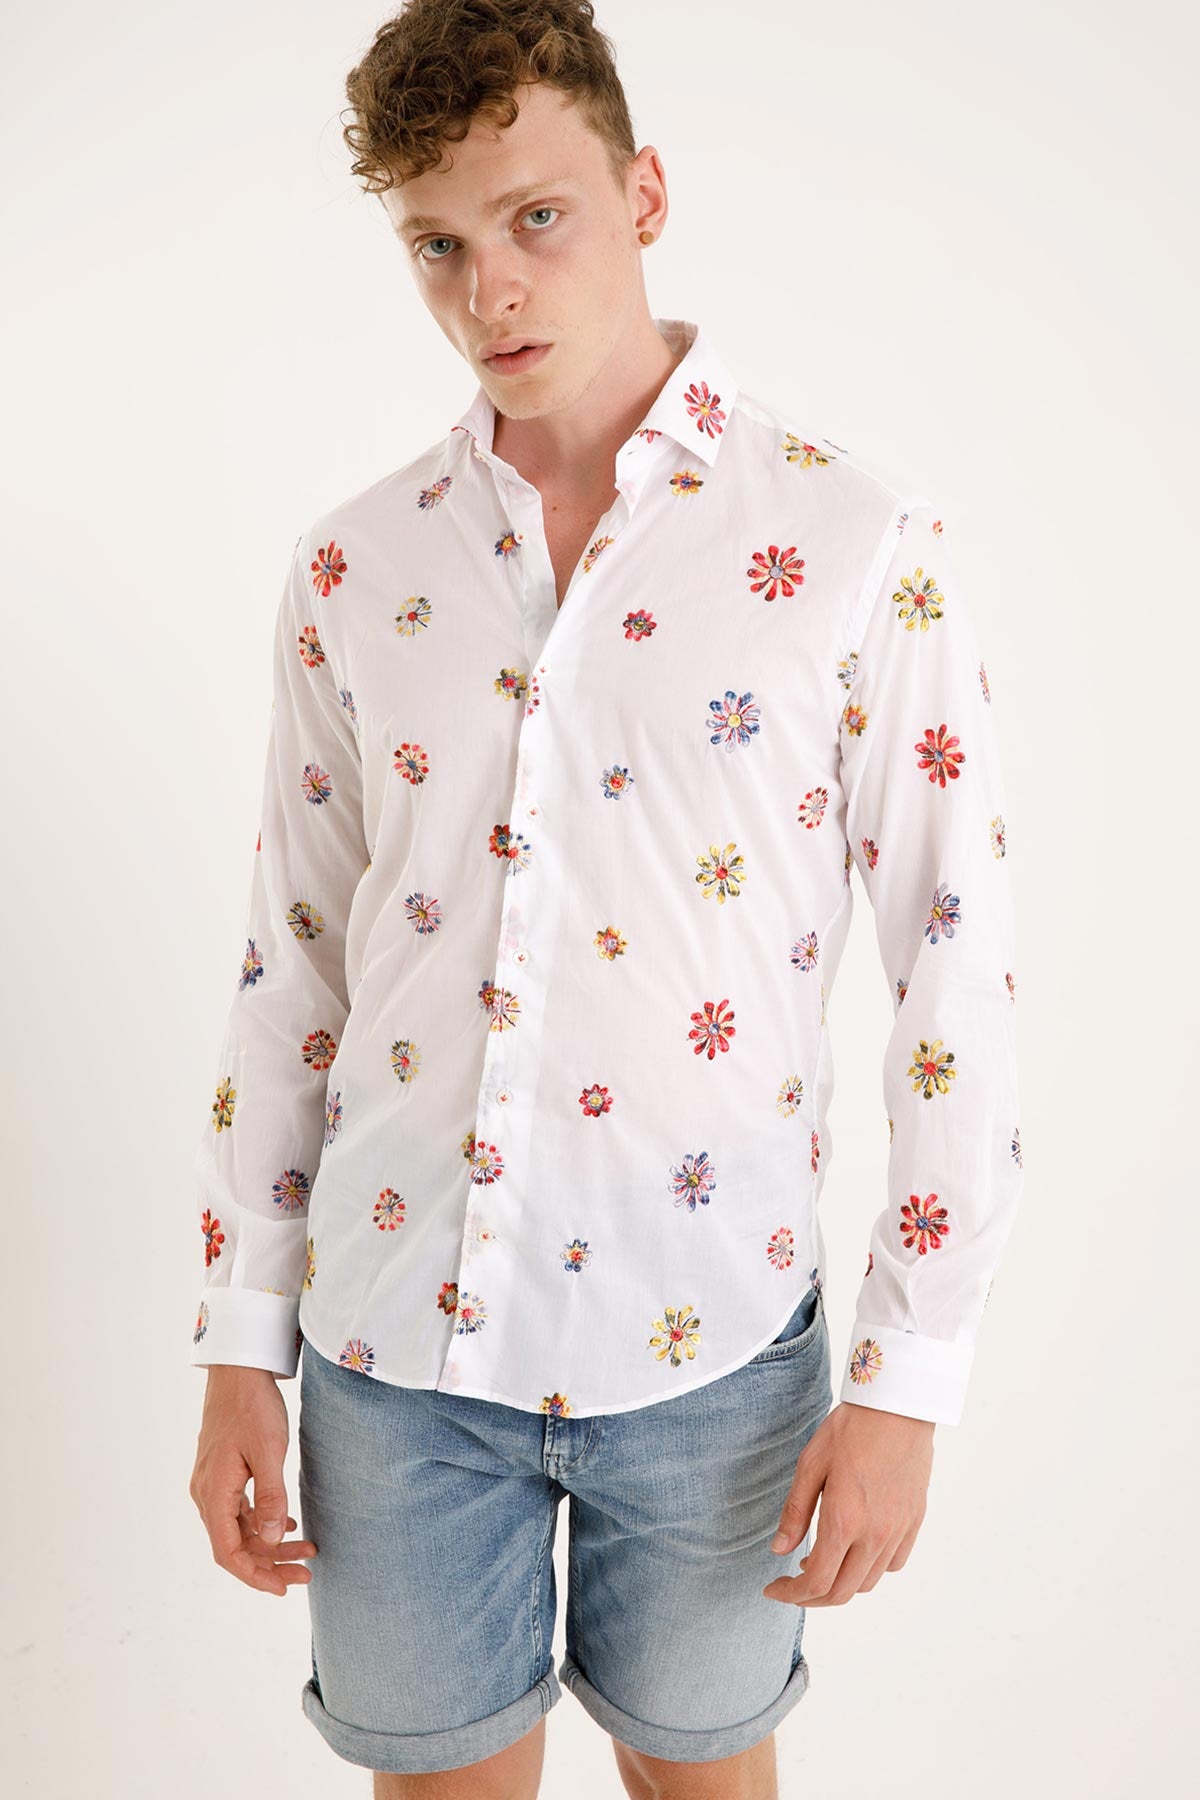 Poggianti İtalyan Yaka Çiçekli Nakışlı Firenze Gömlek-Libas Trendy Fashion Store